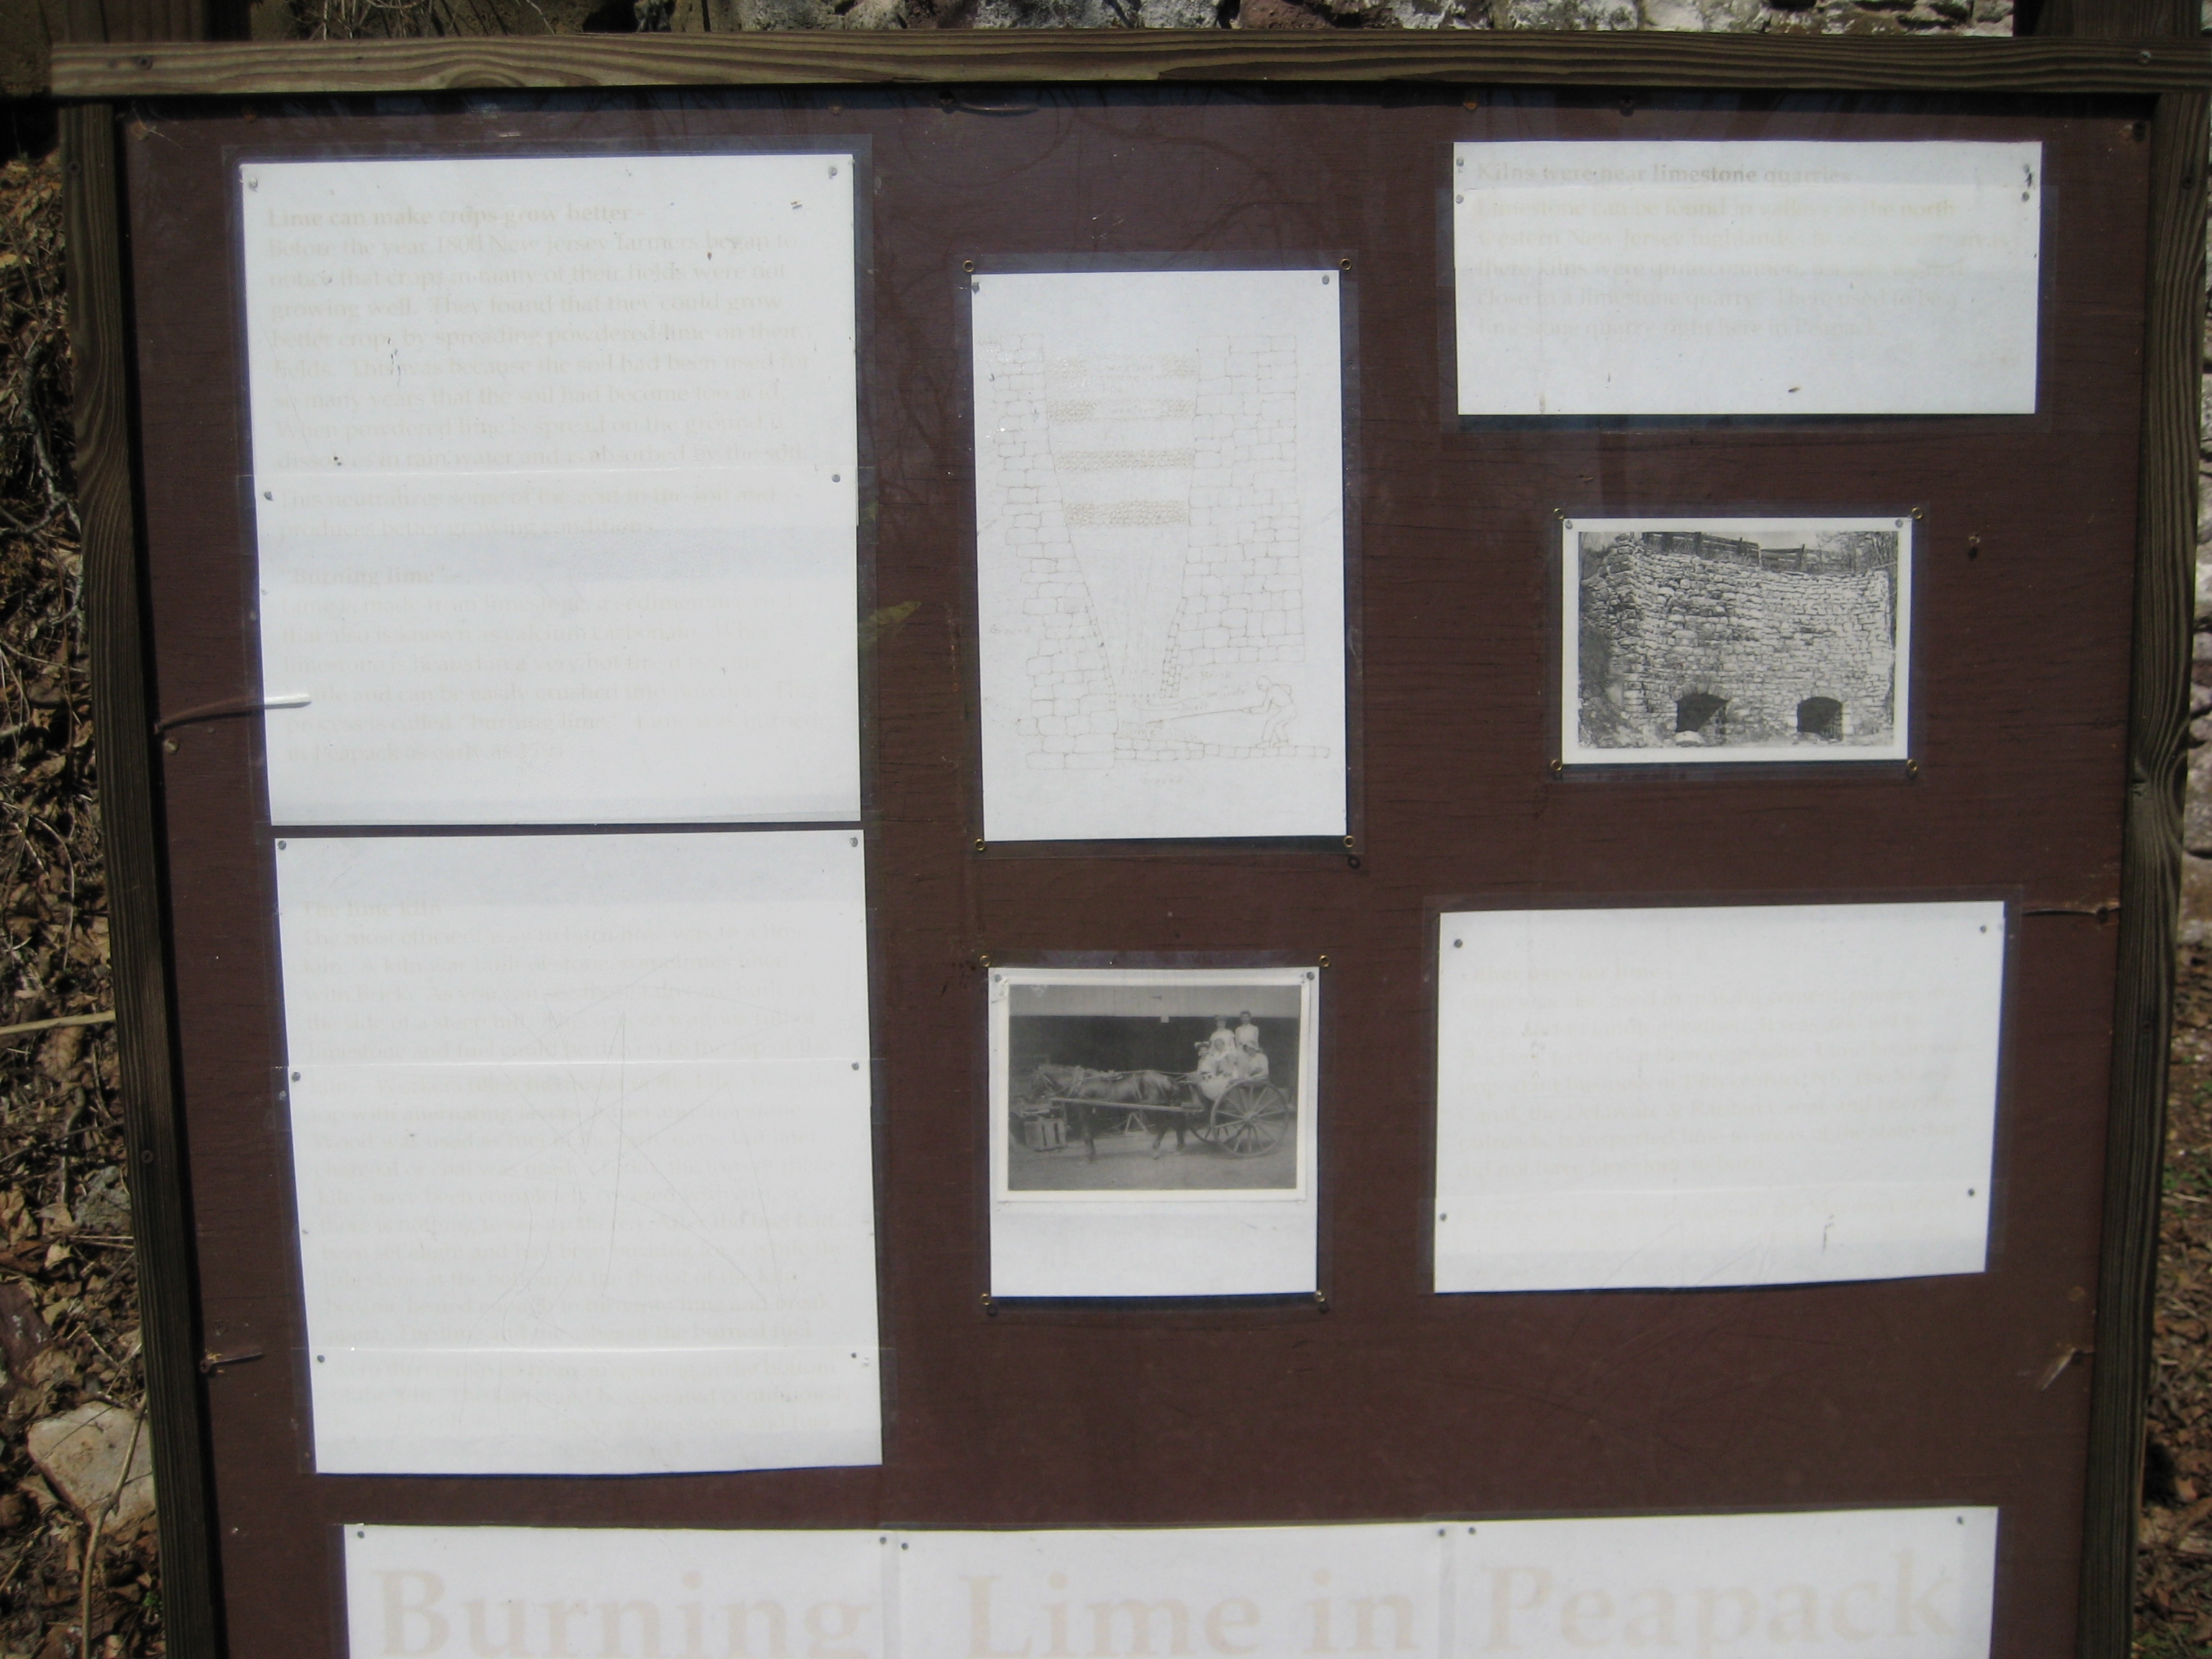 Peapack-Gladstone Lime Kiln Park Bulletin Board